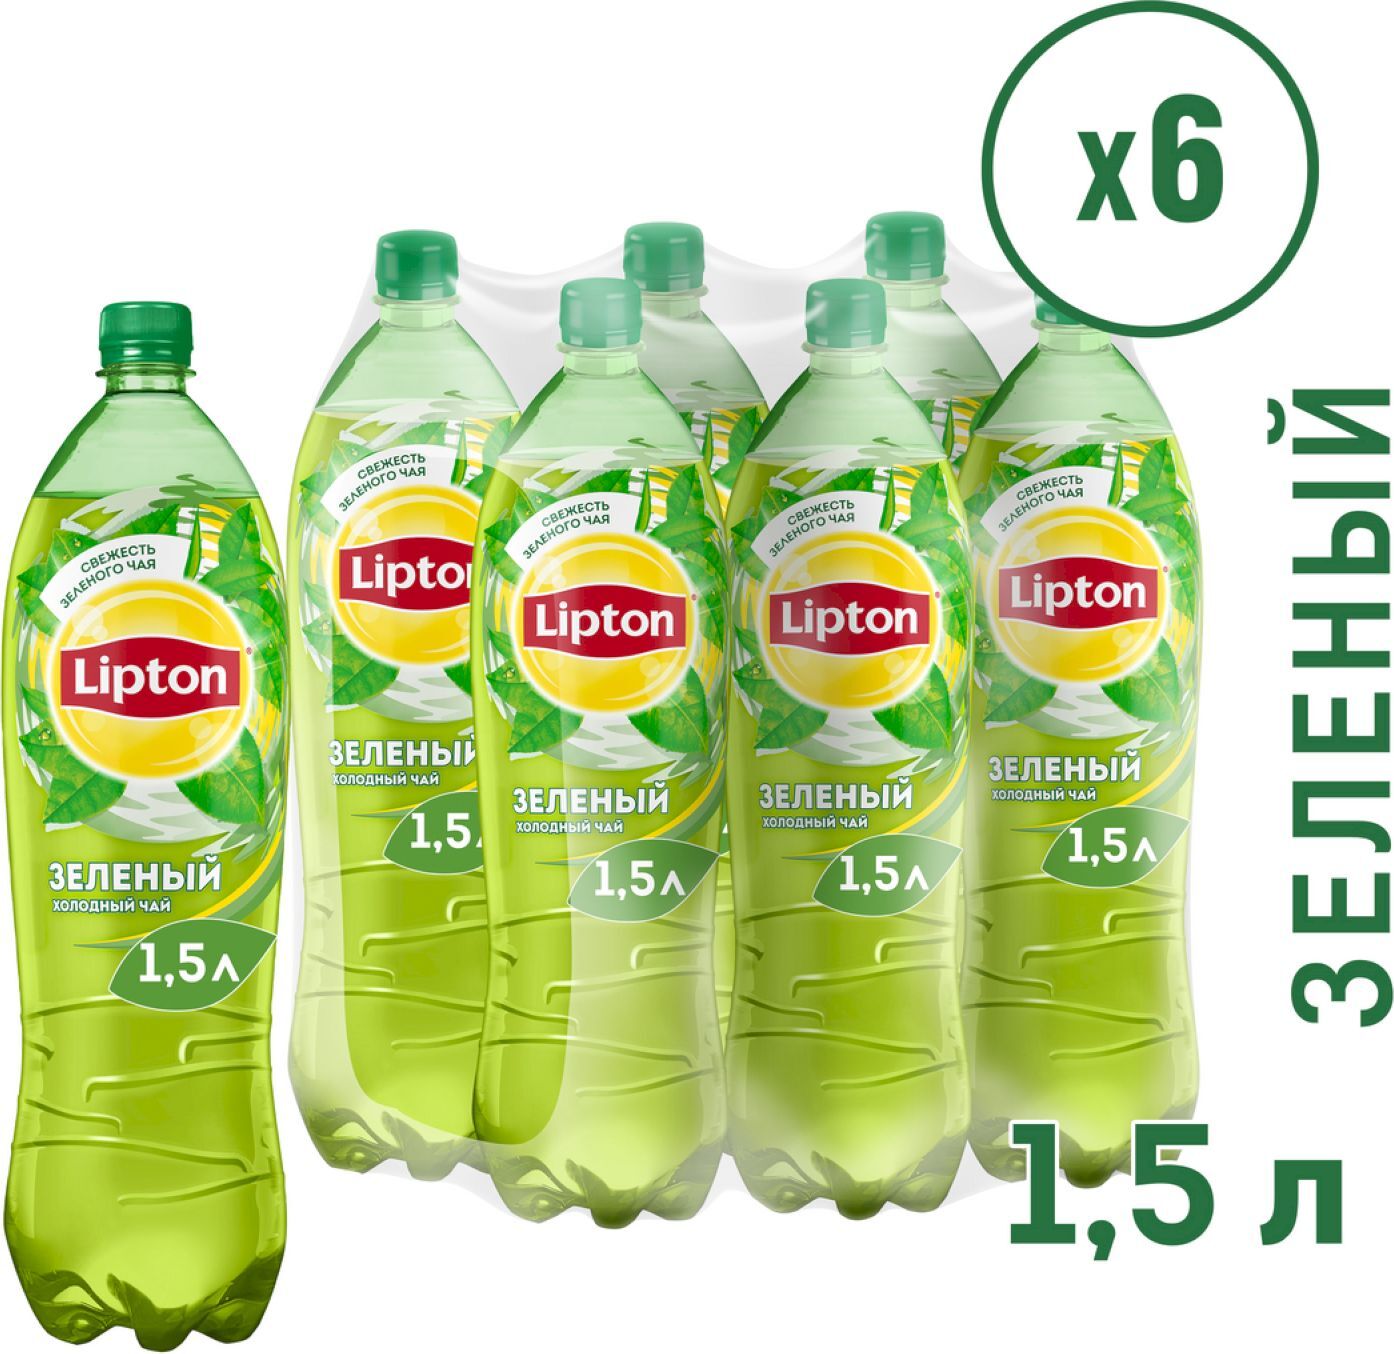 Липтон 1.5. Липтон зелёный холодный чай 1.5. Липтон зеленый чай 1.5. Чай холодный Lipton зелёный чай 1 л. Липтон холодный чай зеленый 0.5.